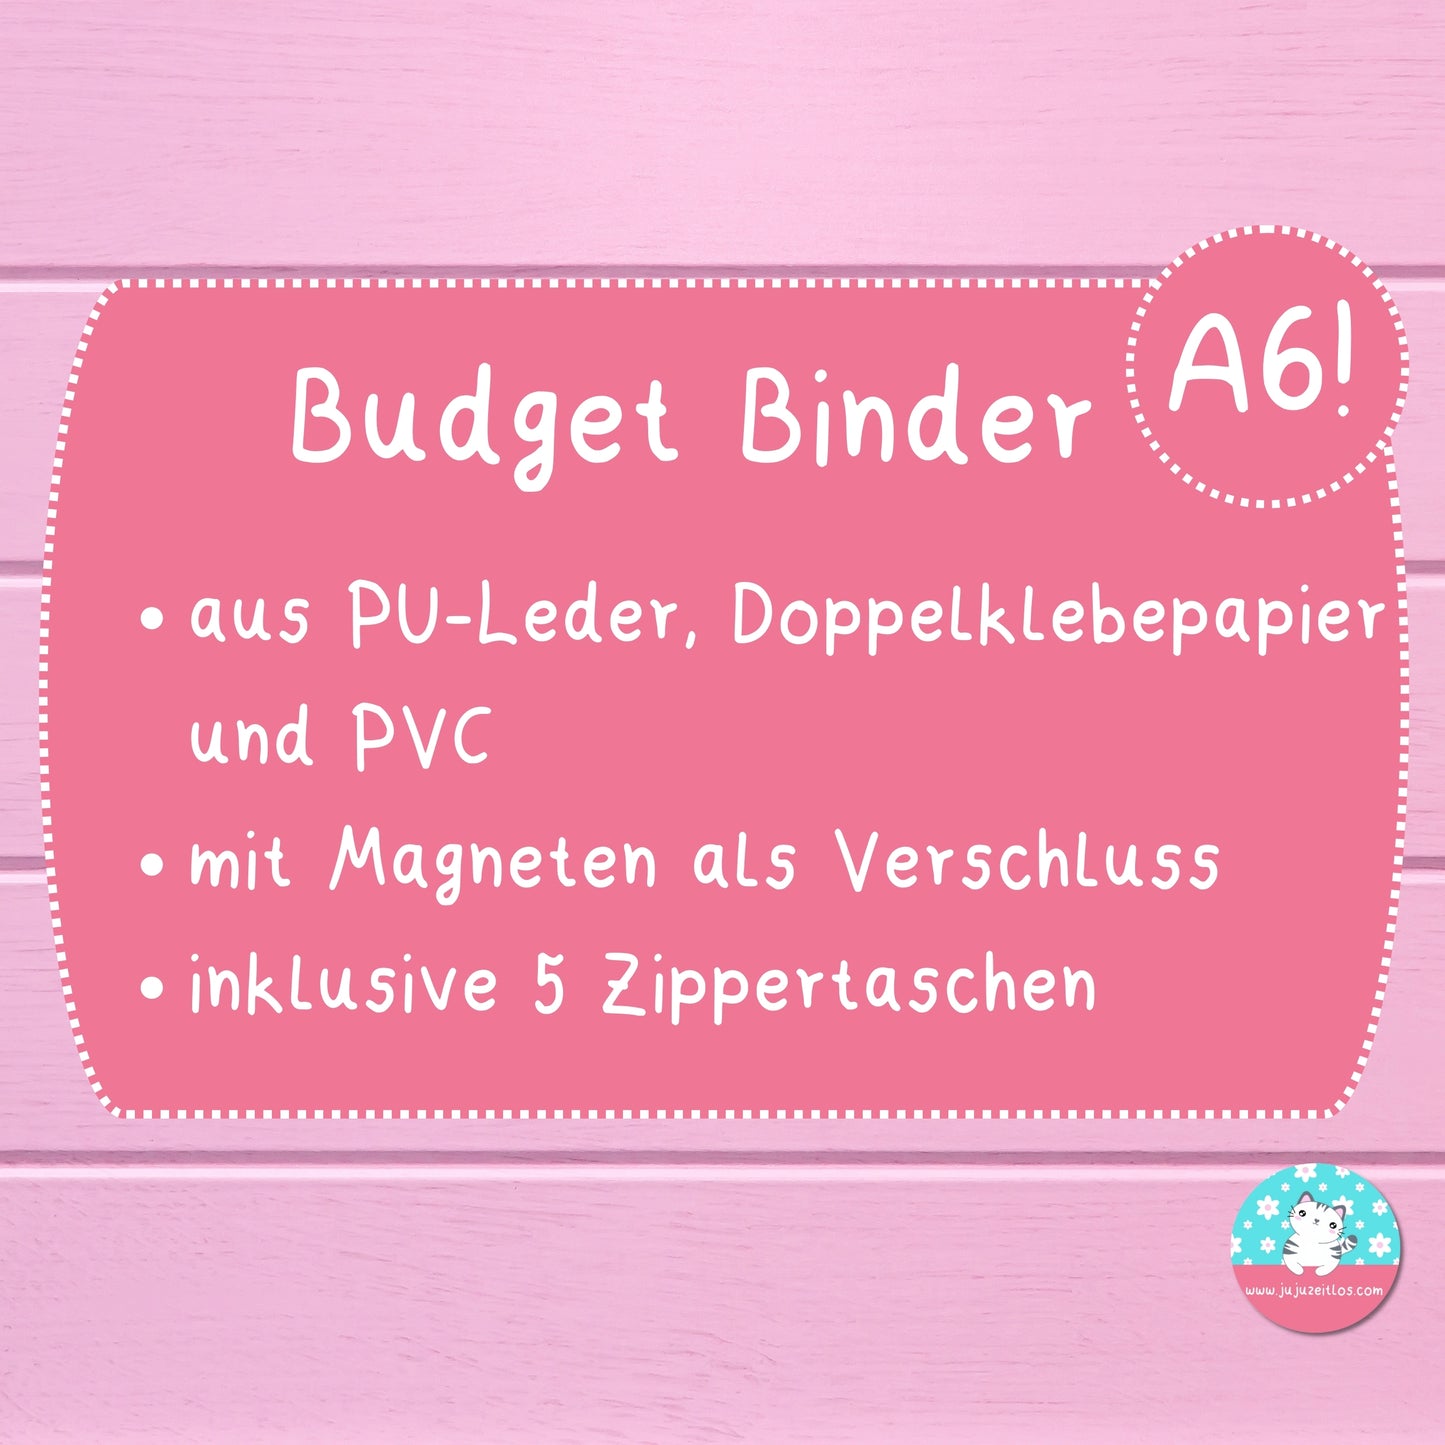 %B-WARE% A6 Budget Binder ♡Binder & Zippertaschen♡